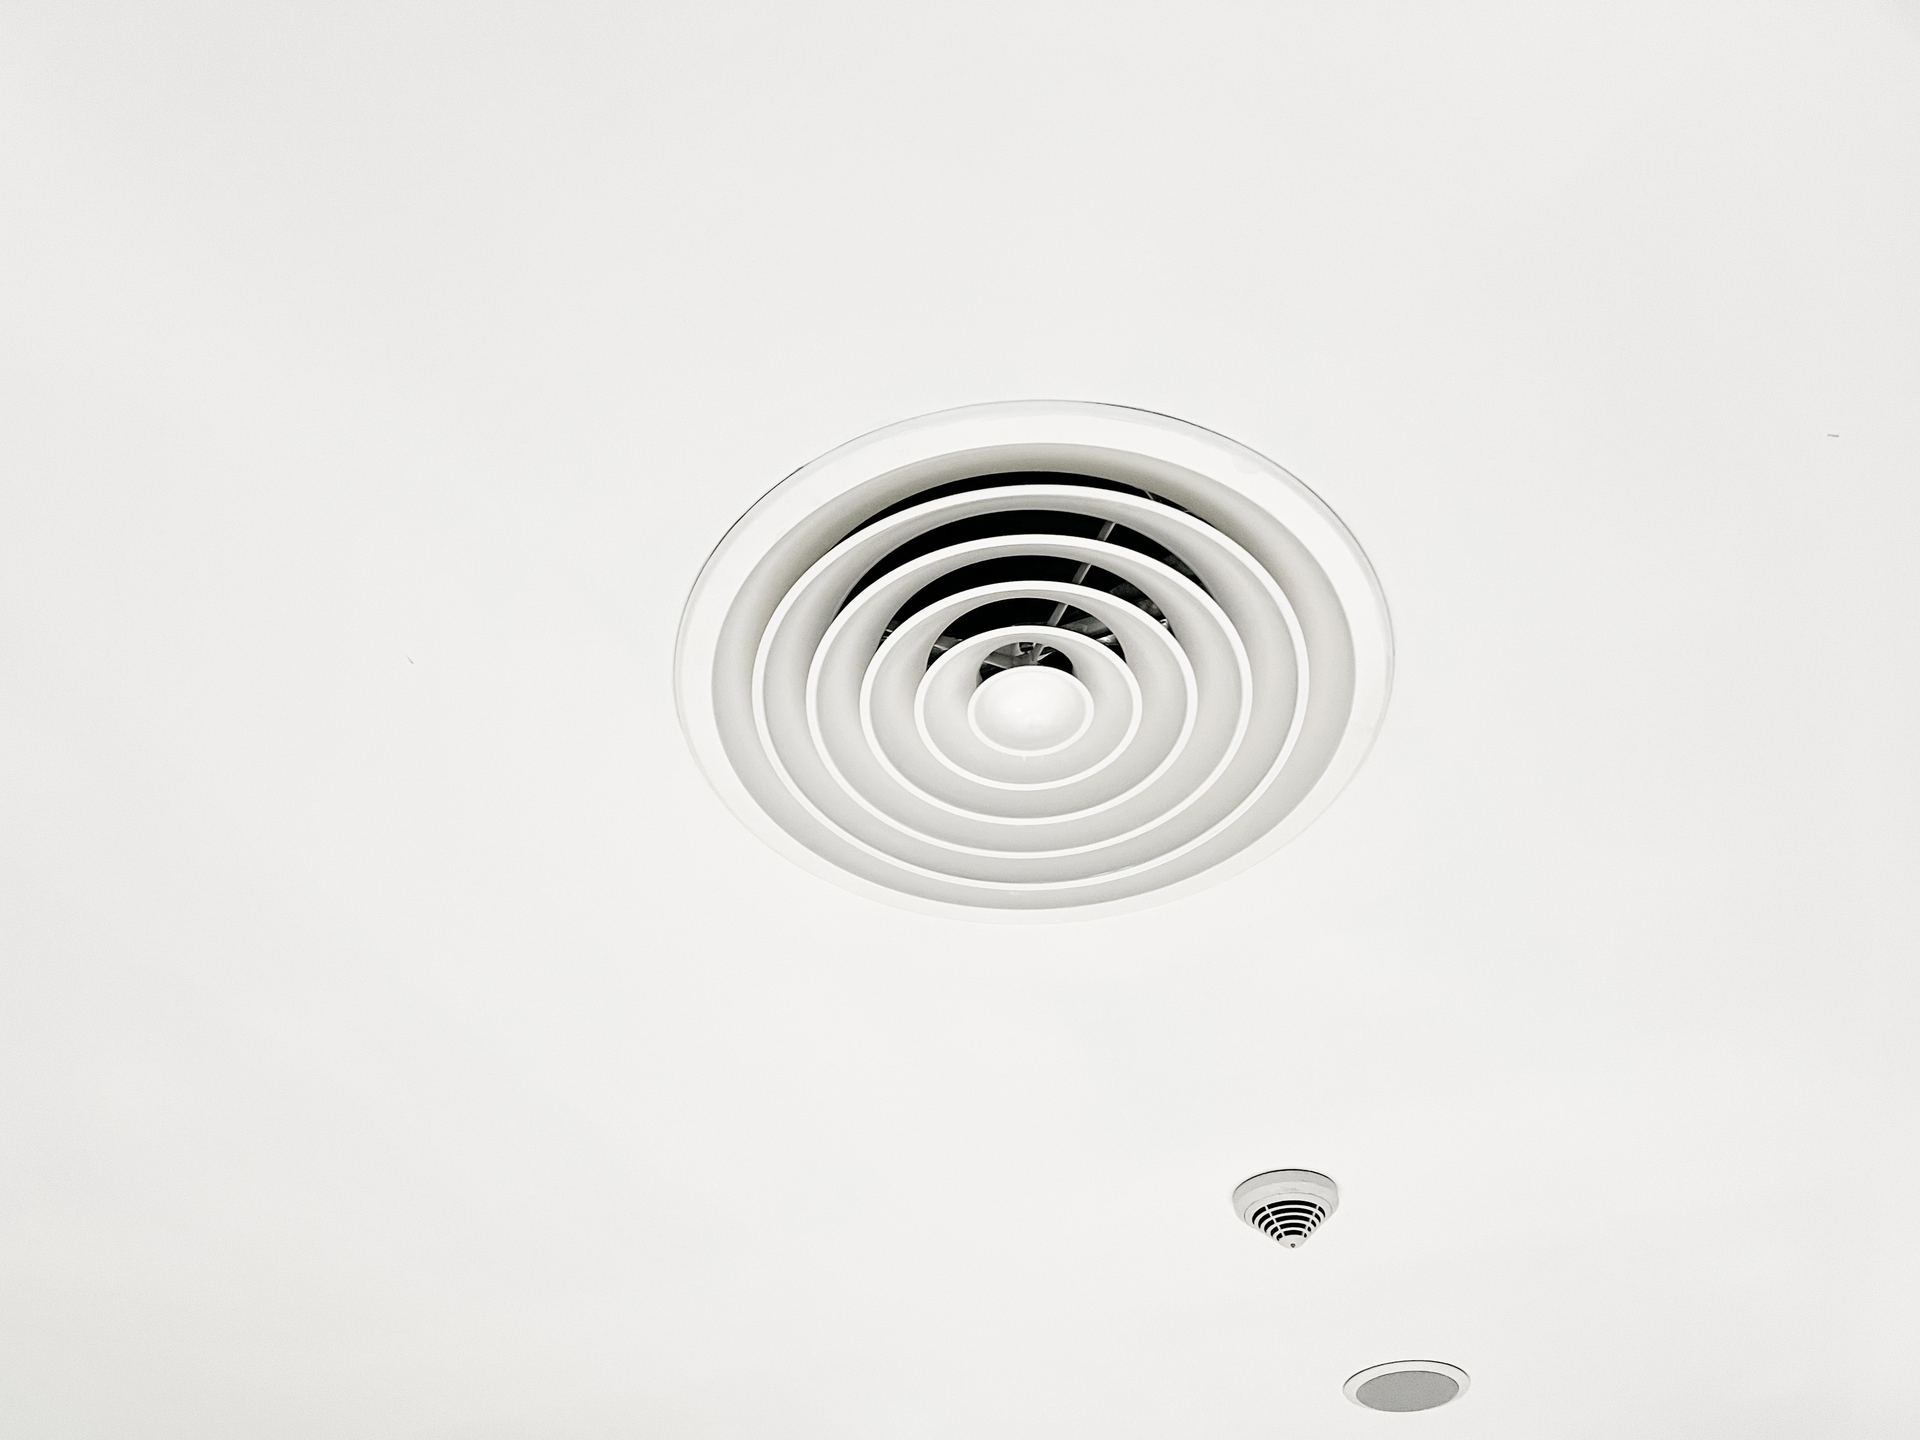 Na obrazku widać biały łazienkowy wentylator, który harmonijnie komponuje się z wnętrzem, nadając mu nowoczesny i elegancki wygląd. Jego minimalistyczny design doskonale pasuje do czystej i świeżej estetyki łazienki. Ten obrazek prezentuje funkcjonalność i styl, jakie może dodać biały wentylator do łazienki, zapewniając jednocześnie efektywną wentylację i usuwanie wilgoci